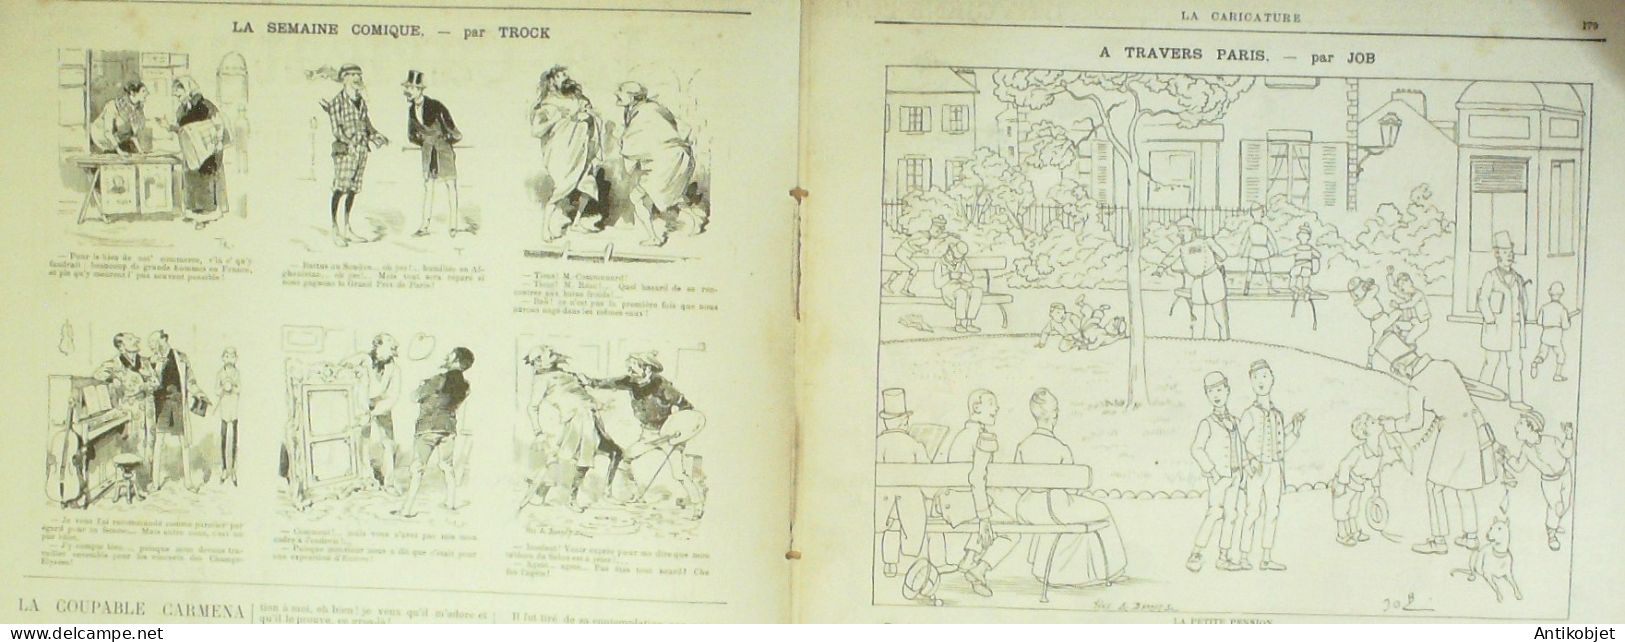 La Caricature 1885 N°284 Civils & Militaires Caran D'Ache Hygiène Trock Job - Zeitschriften - Vor 1900